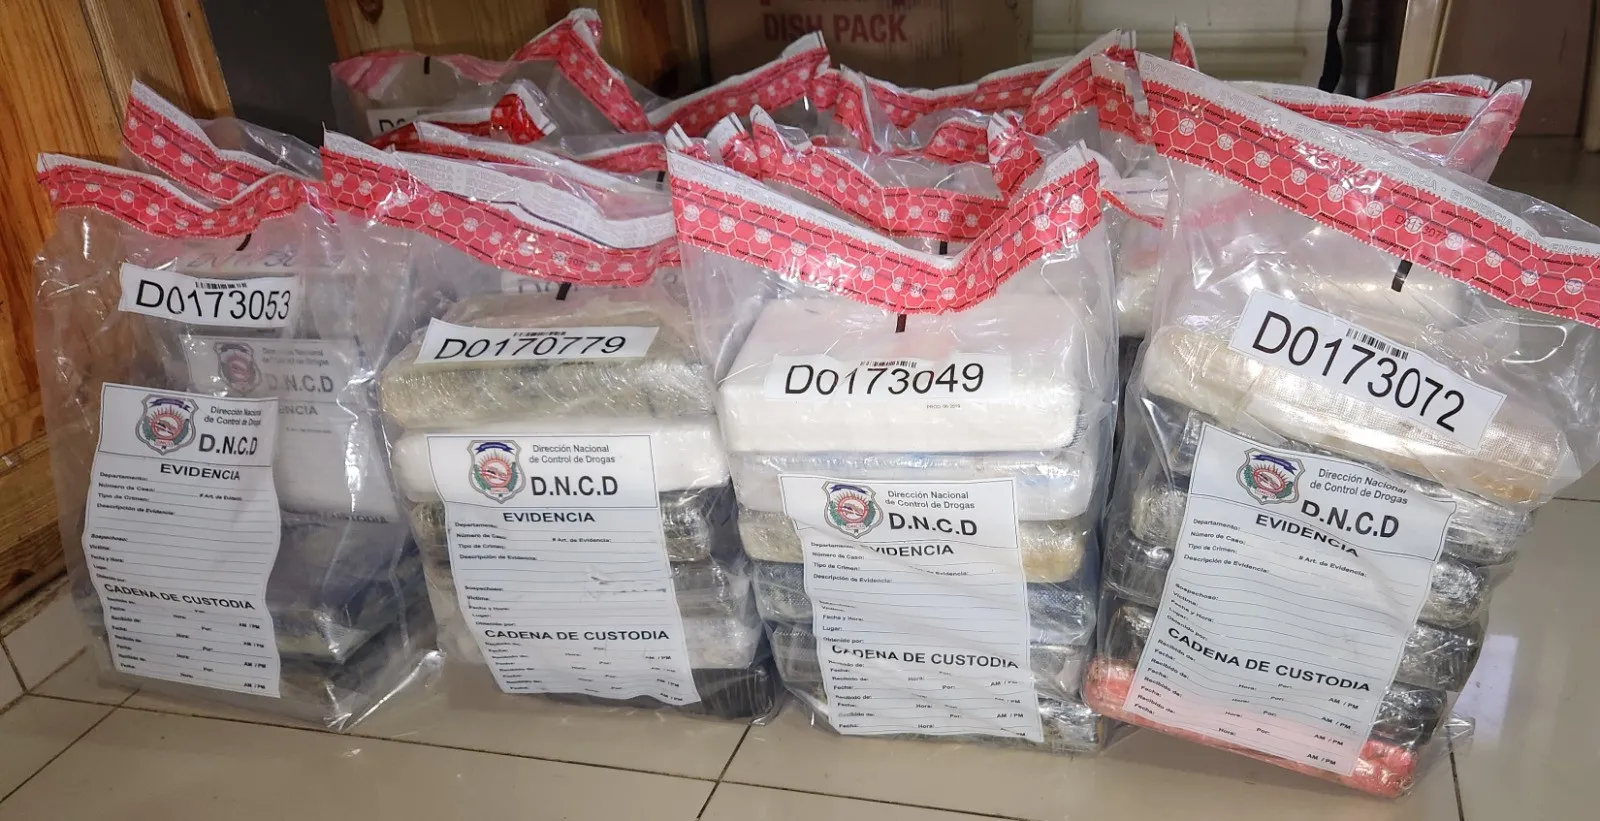 Antinarcóticos confisca 92 paquetes de cocaína en Puerto Caucedo